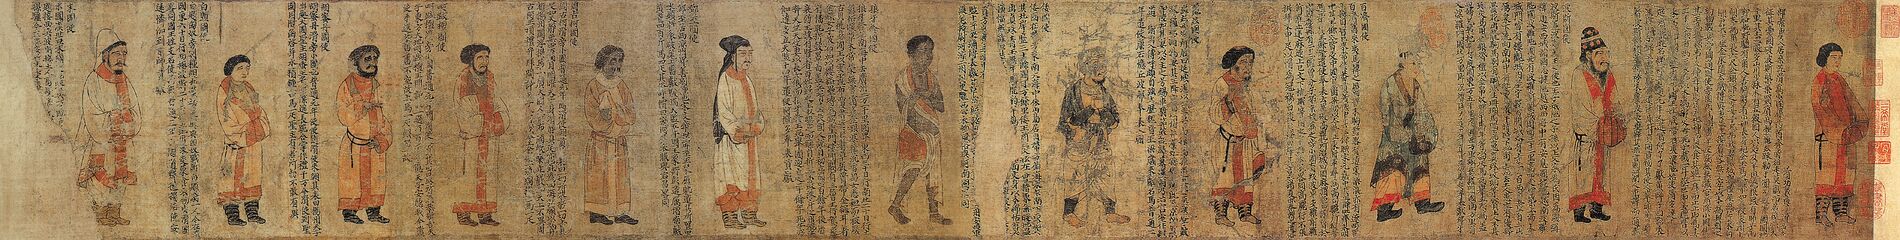 梁元帝蕭繹《職貢圖》卷北宋摹本，現存最早的職貢圖